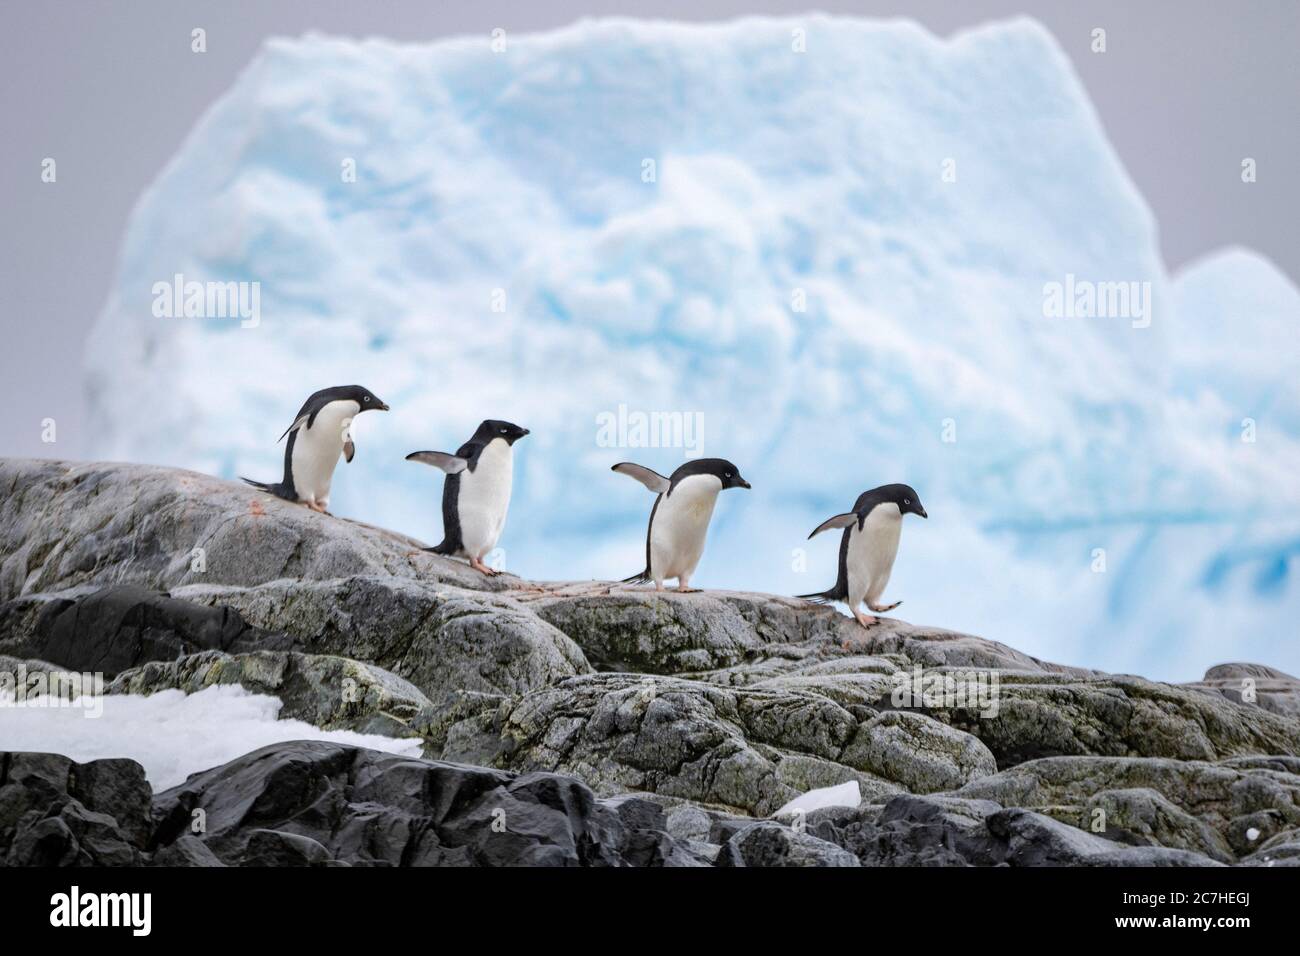 Watscheln zum Ufer; gezackter Eisberg im Hintergrund; gleichmäßig verteilte Pinguine, Einheitlichkeit; kollektives Verhalten; Sicherheit in Zahlen; glatter roc Stockfoto